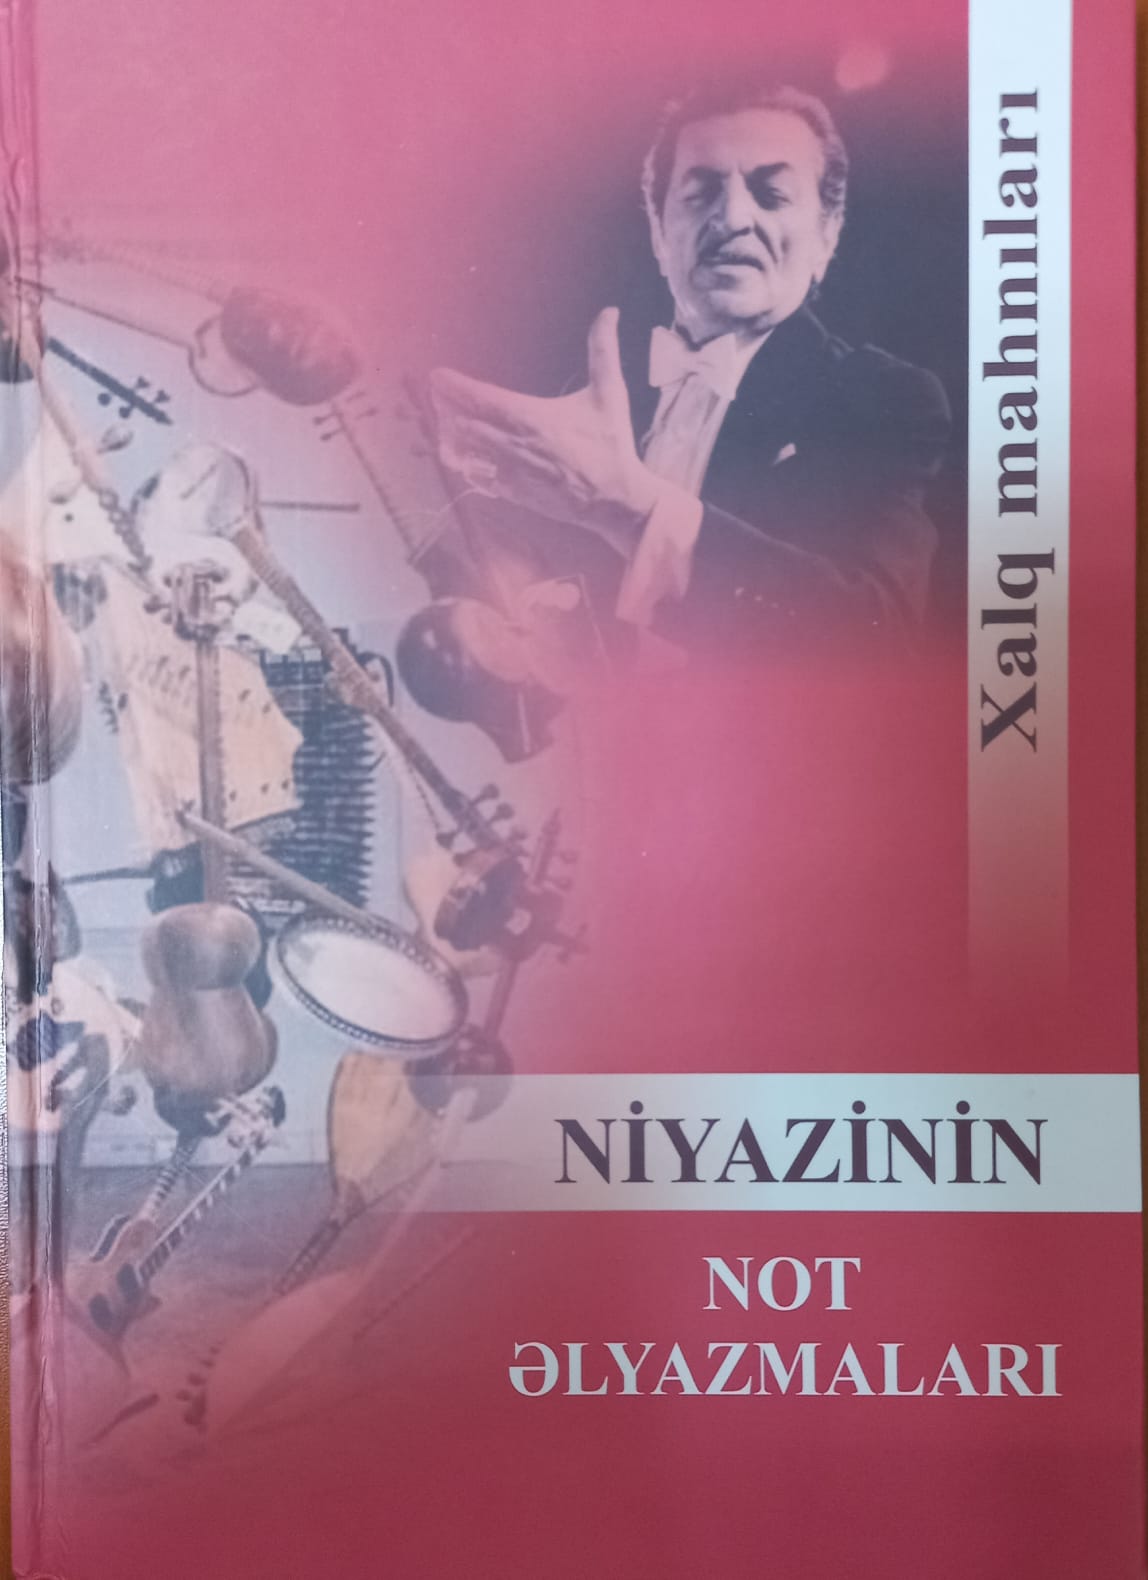 Издана книга «Нотные рукописи Ниязи»